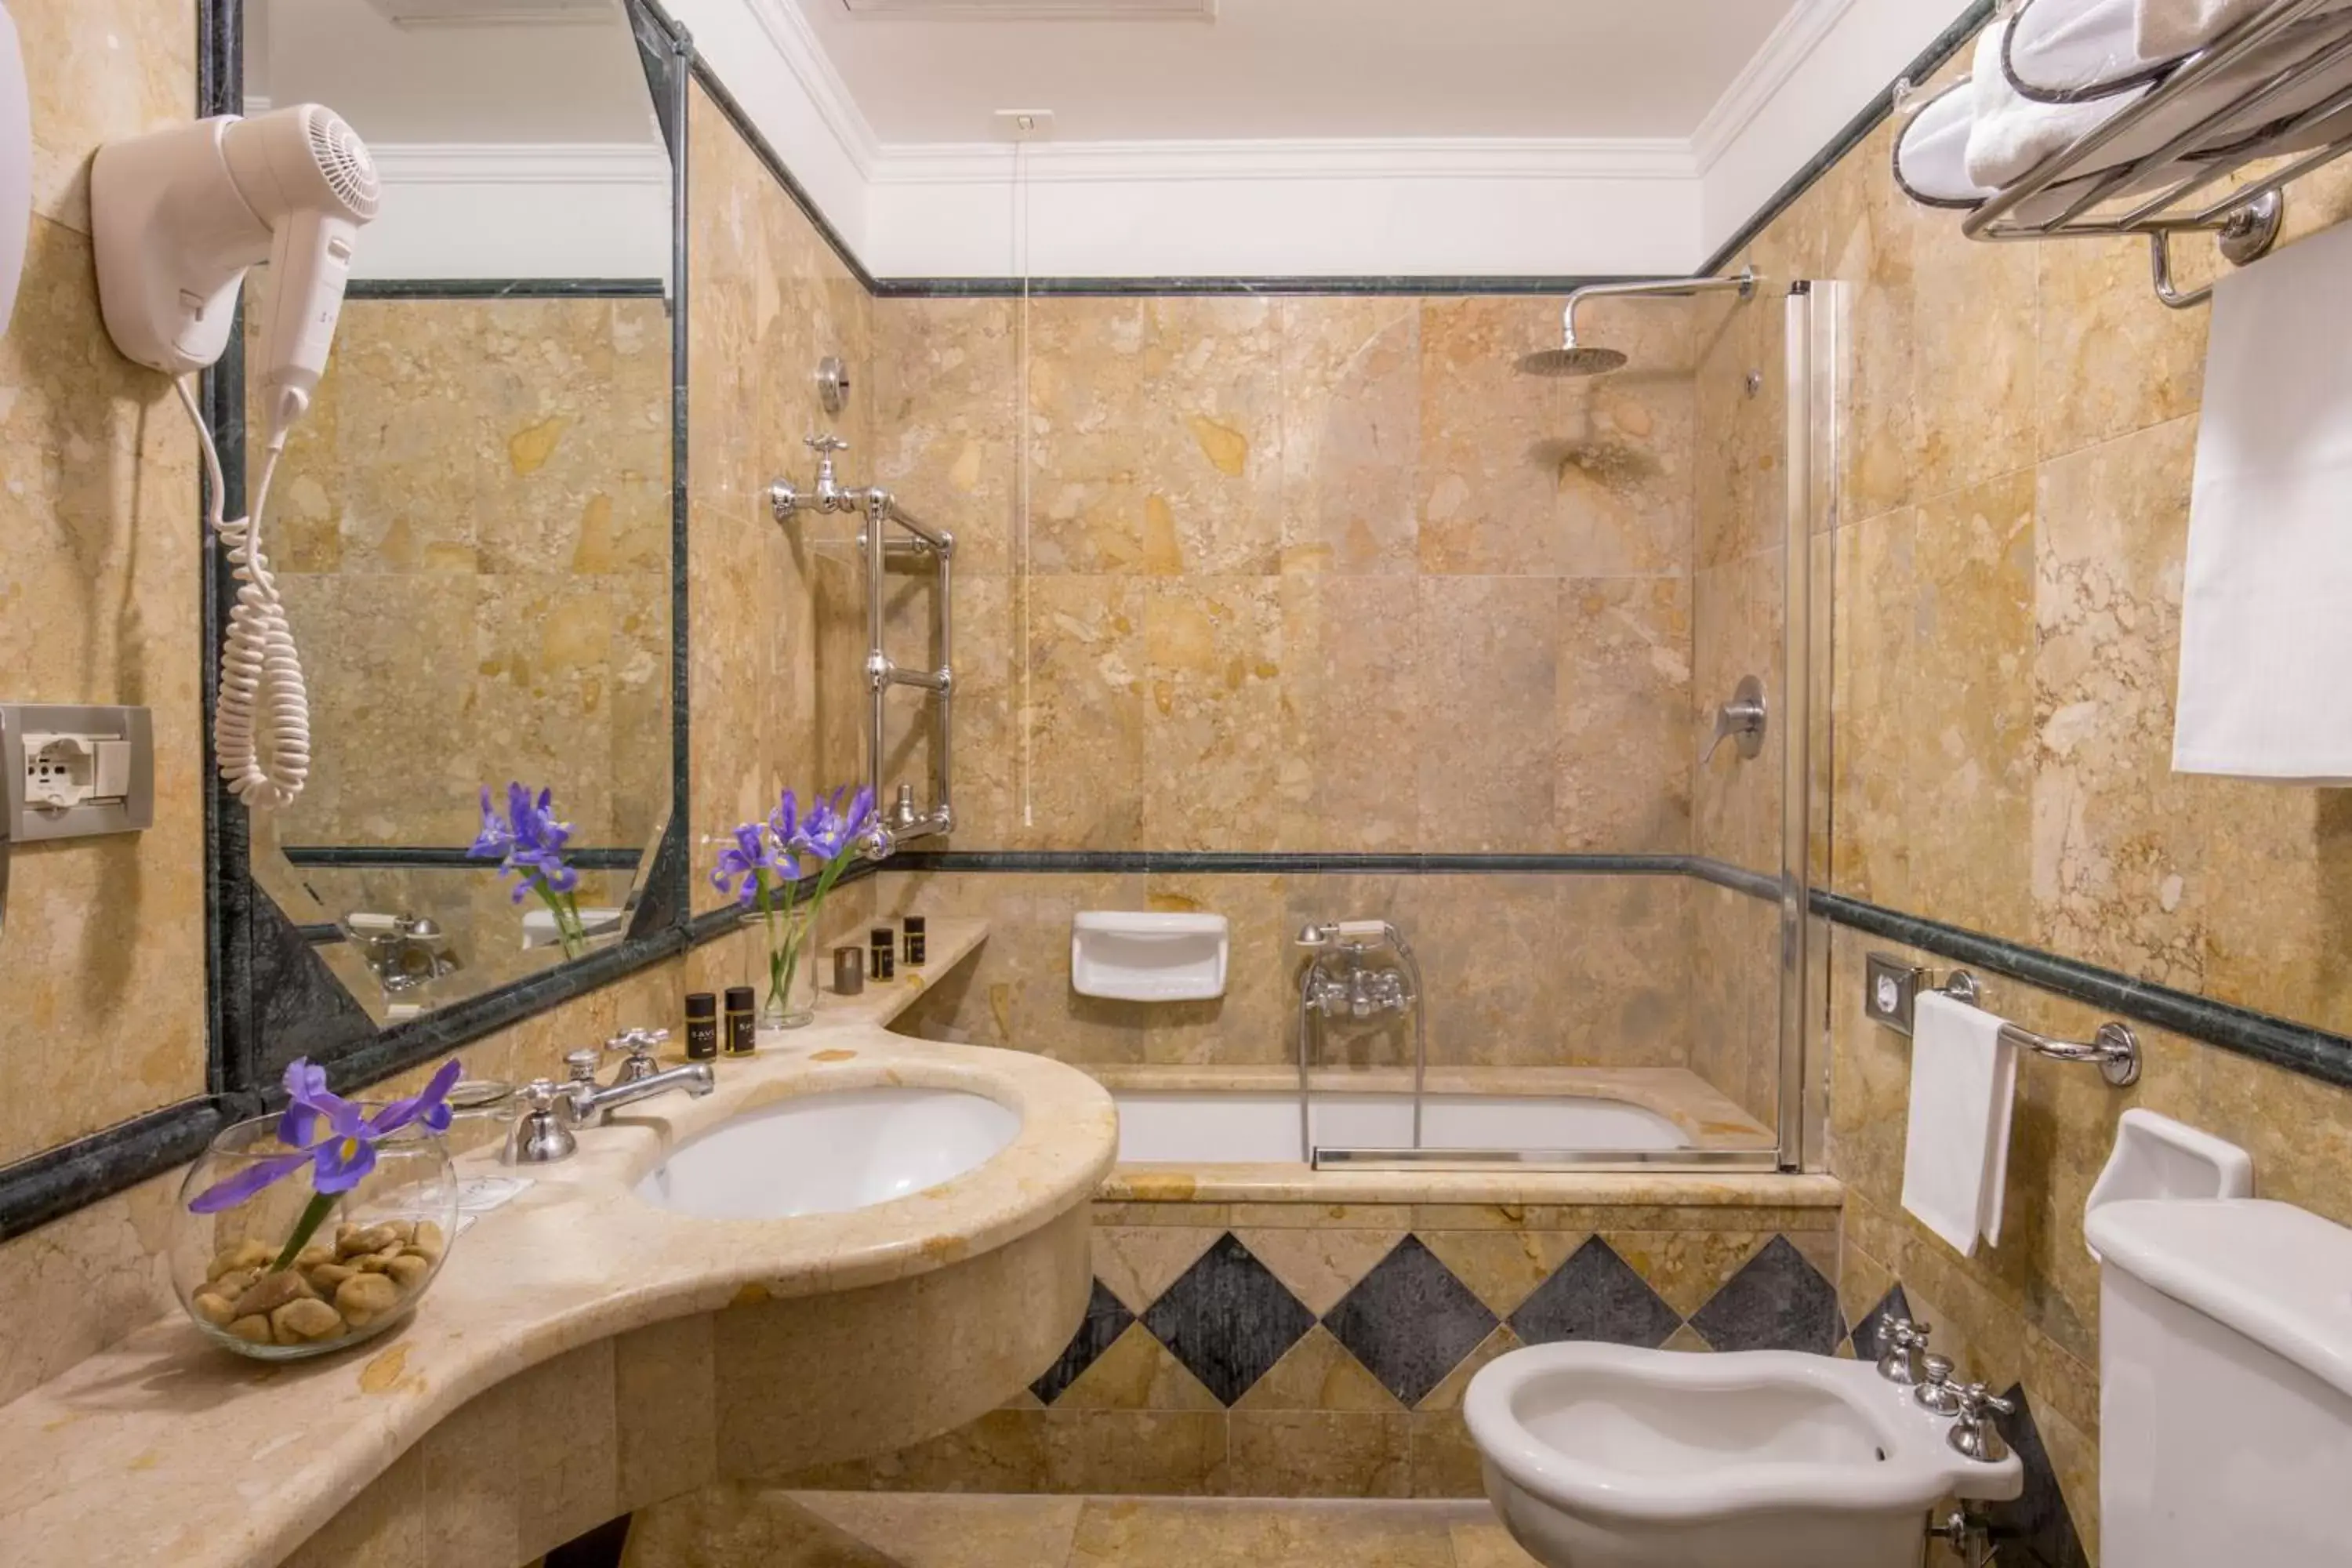 Bathroom in Hotel Savoy